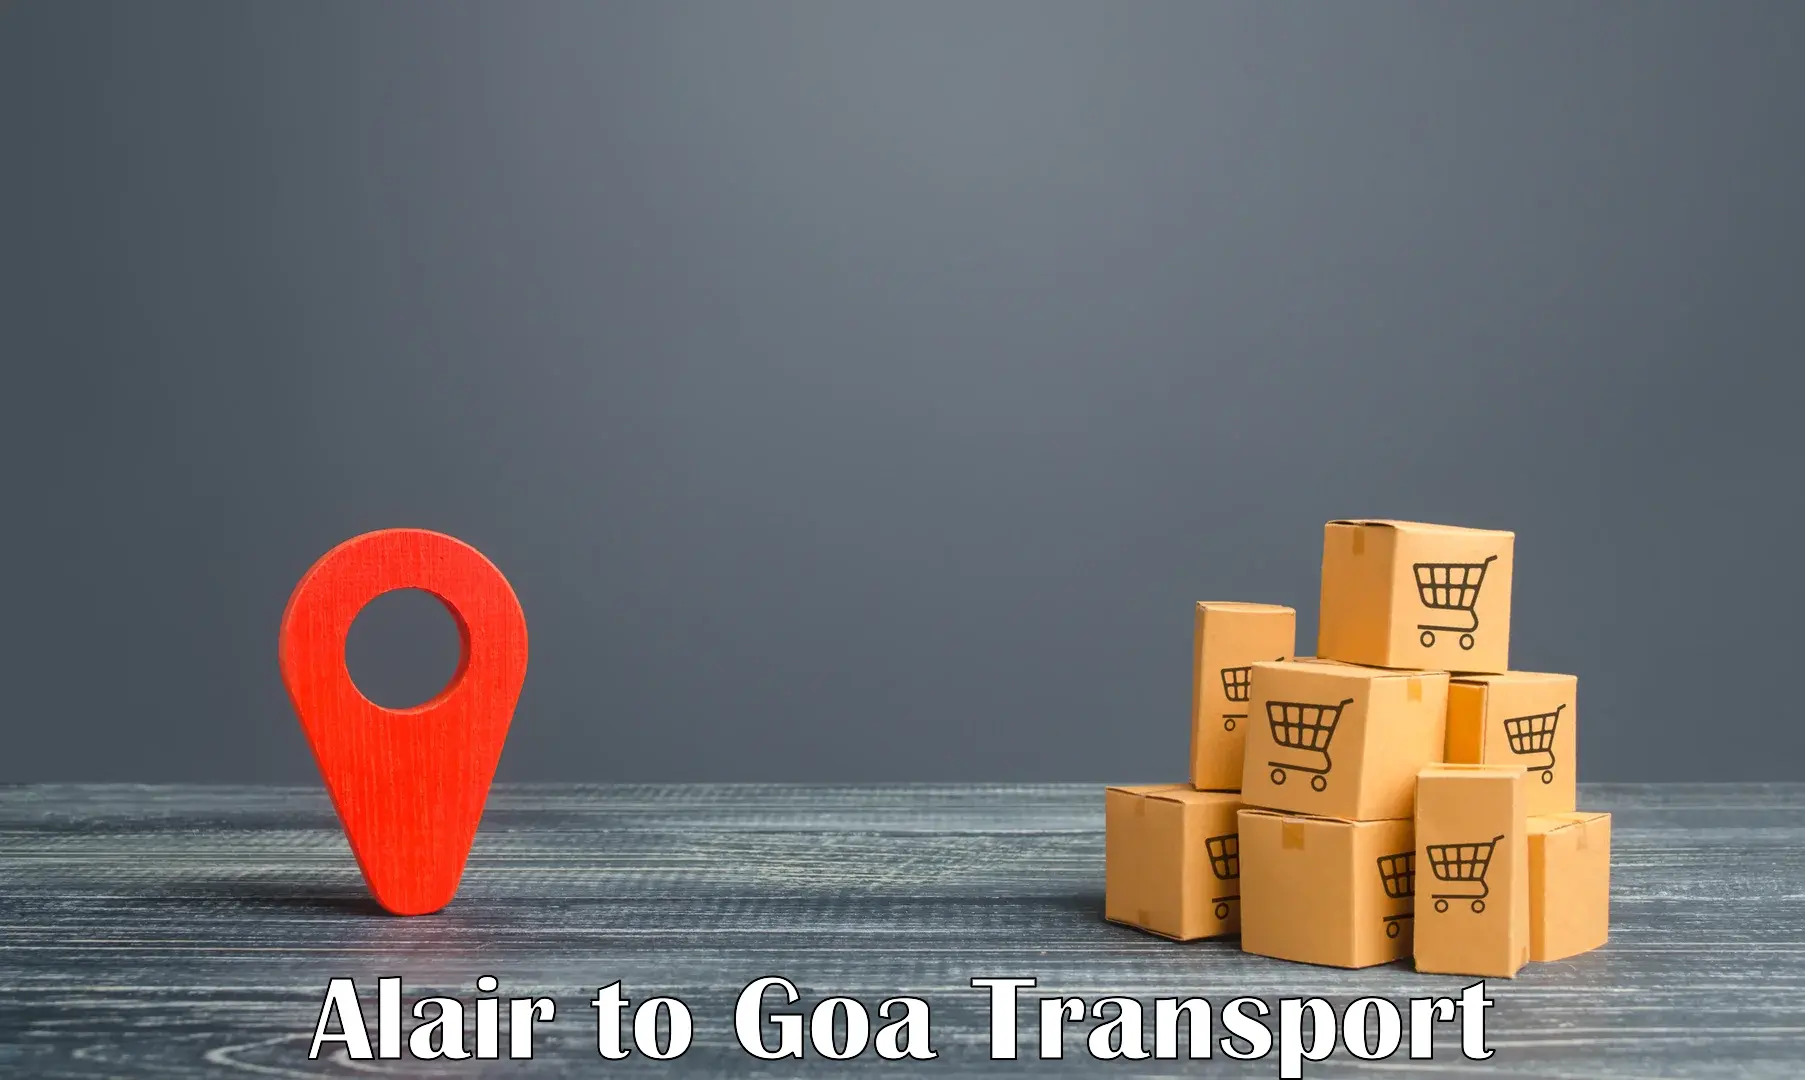 Nearby transport service Alair to Panaji